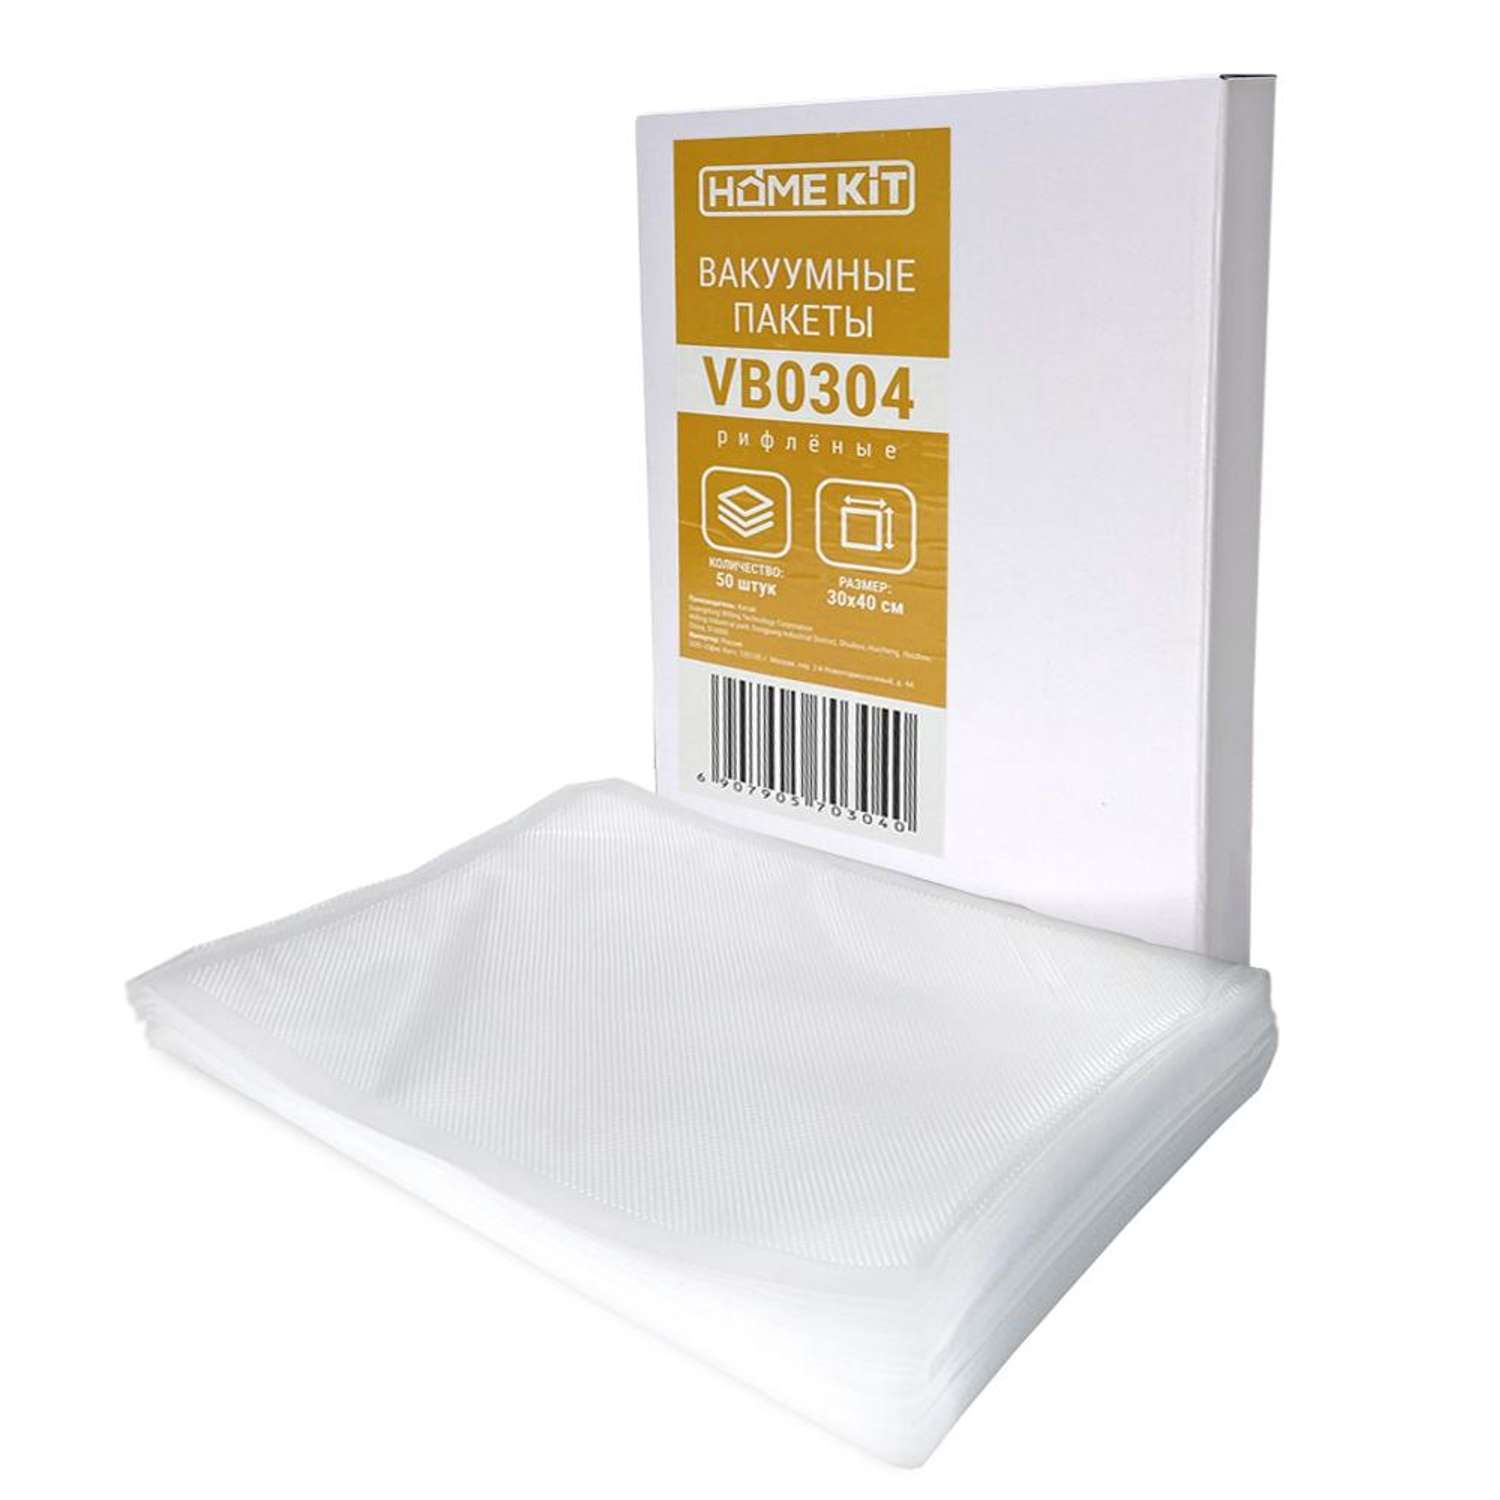 Вакуумные пакеты Home Kit универсальные для вакуумирования размер 30х40 см толщина 350 мкм - фото 1